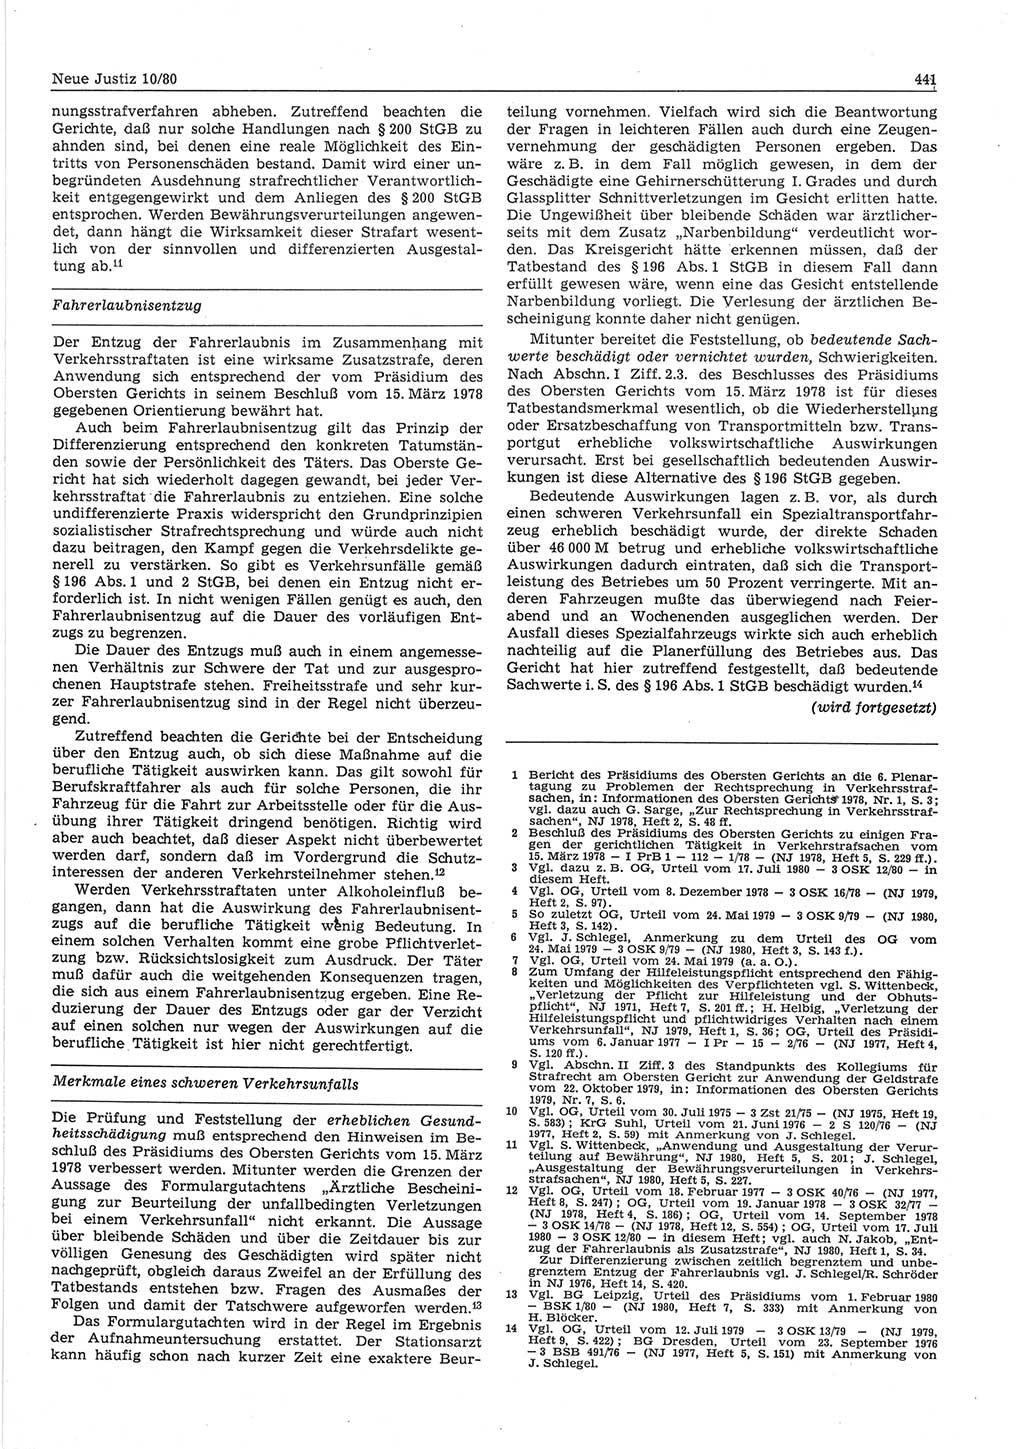 Neue Justiz (NJ), Zeitschrift für sozialistisches Recht und Gesetzlichkeit [Deutsche Demokratische Republik (DDR)], 34. Jahrgang 1980, Seite 441 (NJ DDR 1980, S. 441)